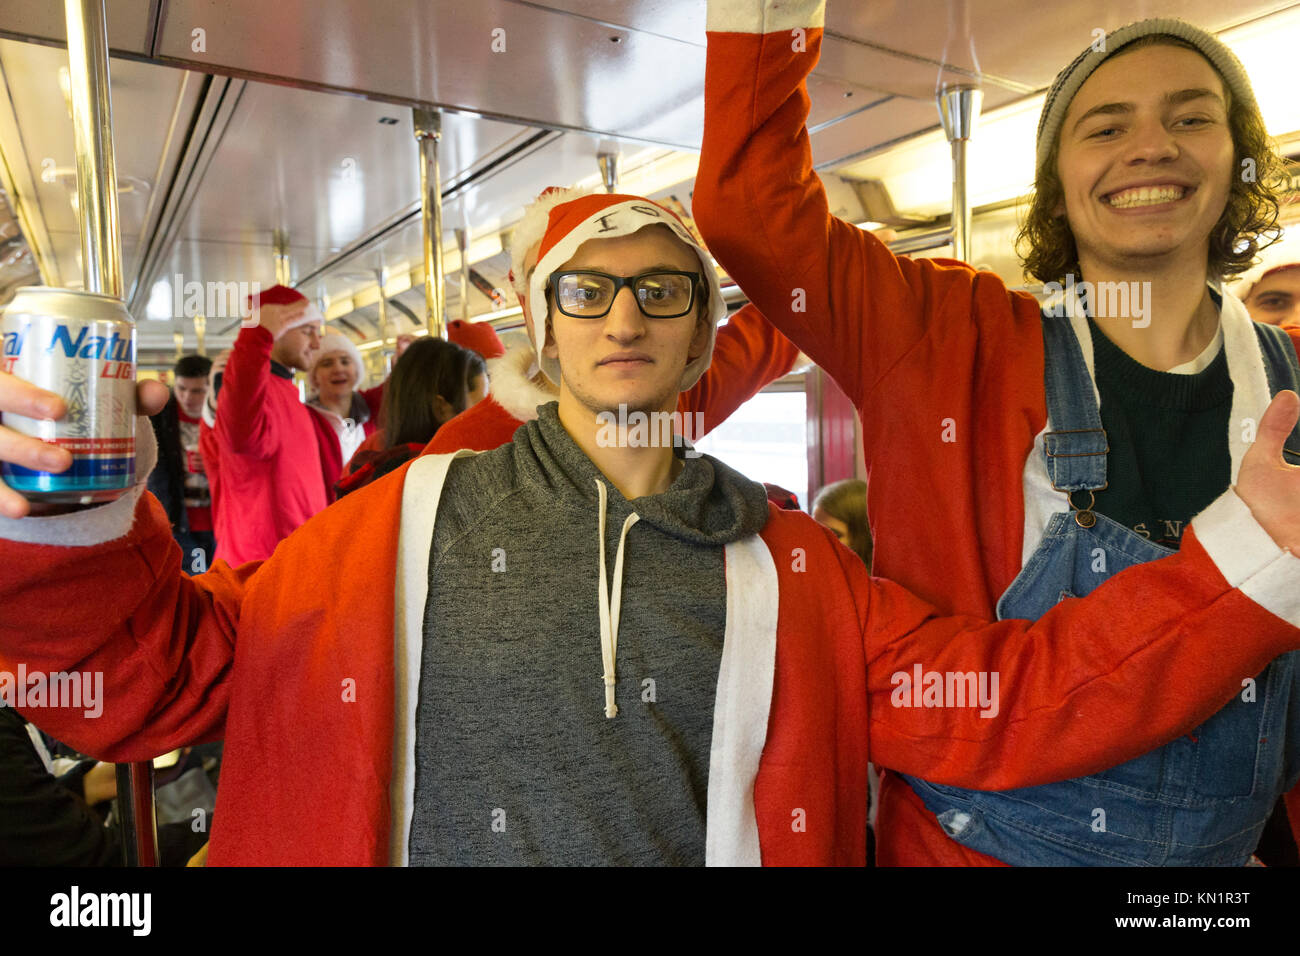 New York, NY - 9 décembre 2017 : Les participants de SantaCon 2017 équitation métro de New York Crédit : lev radin/Alamy Live News Banque D'Images